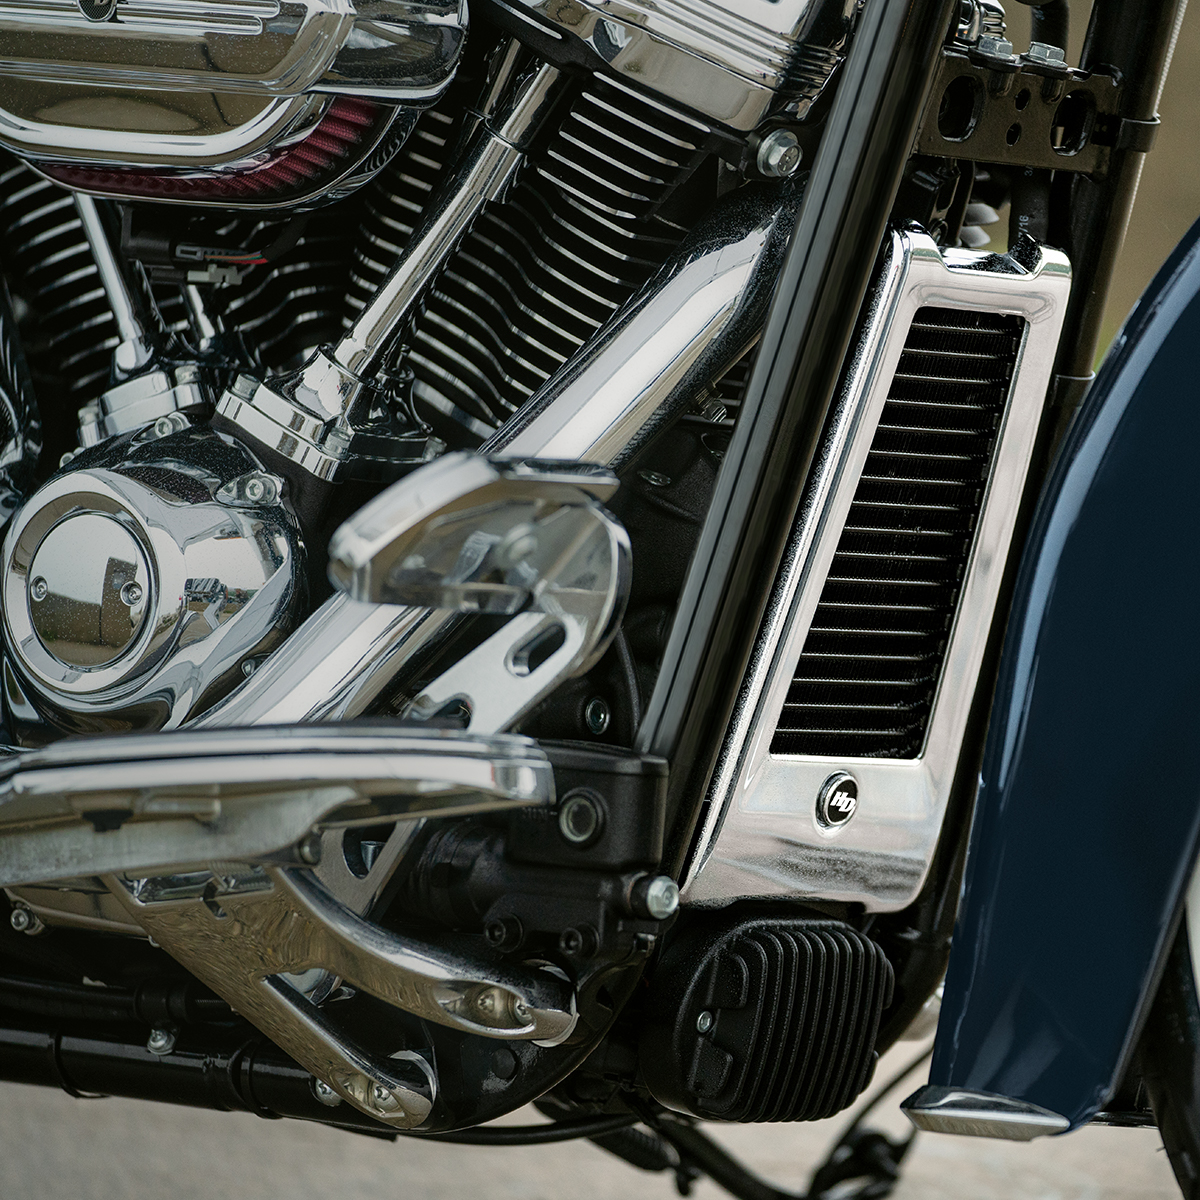 Motocicleta Deluxe 2019  Harley  Davidson  Brasil 